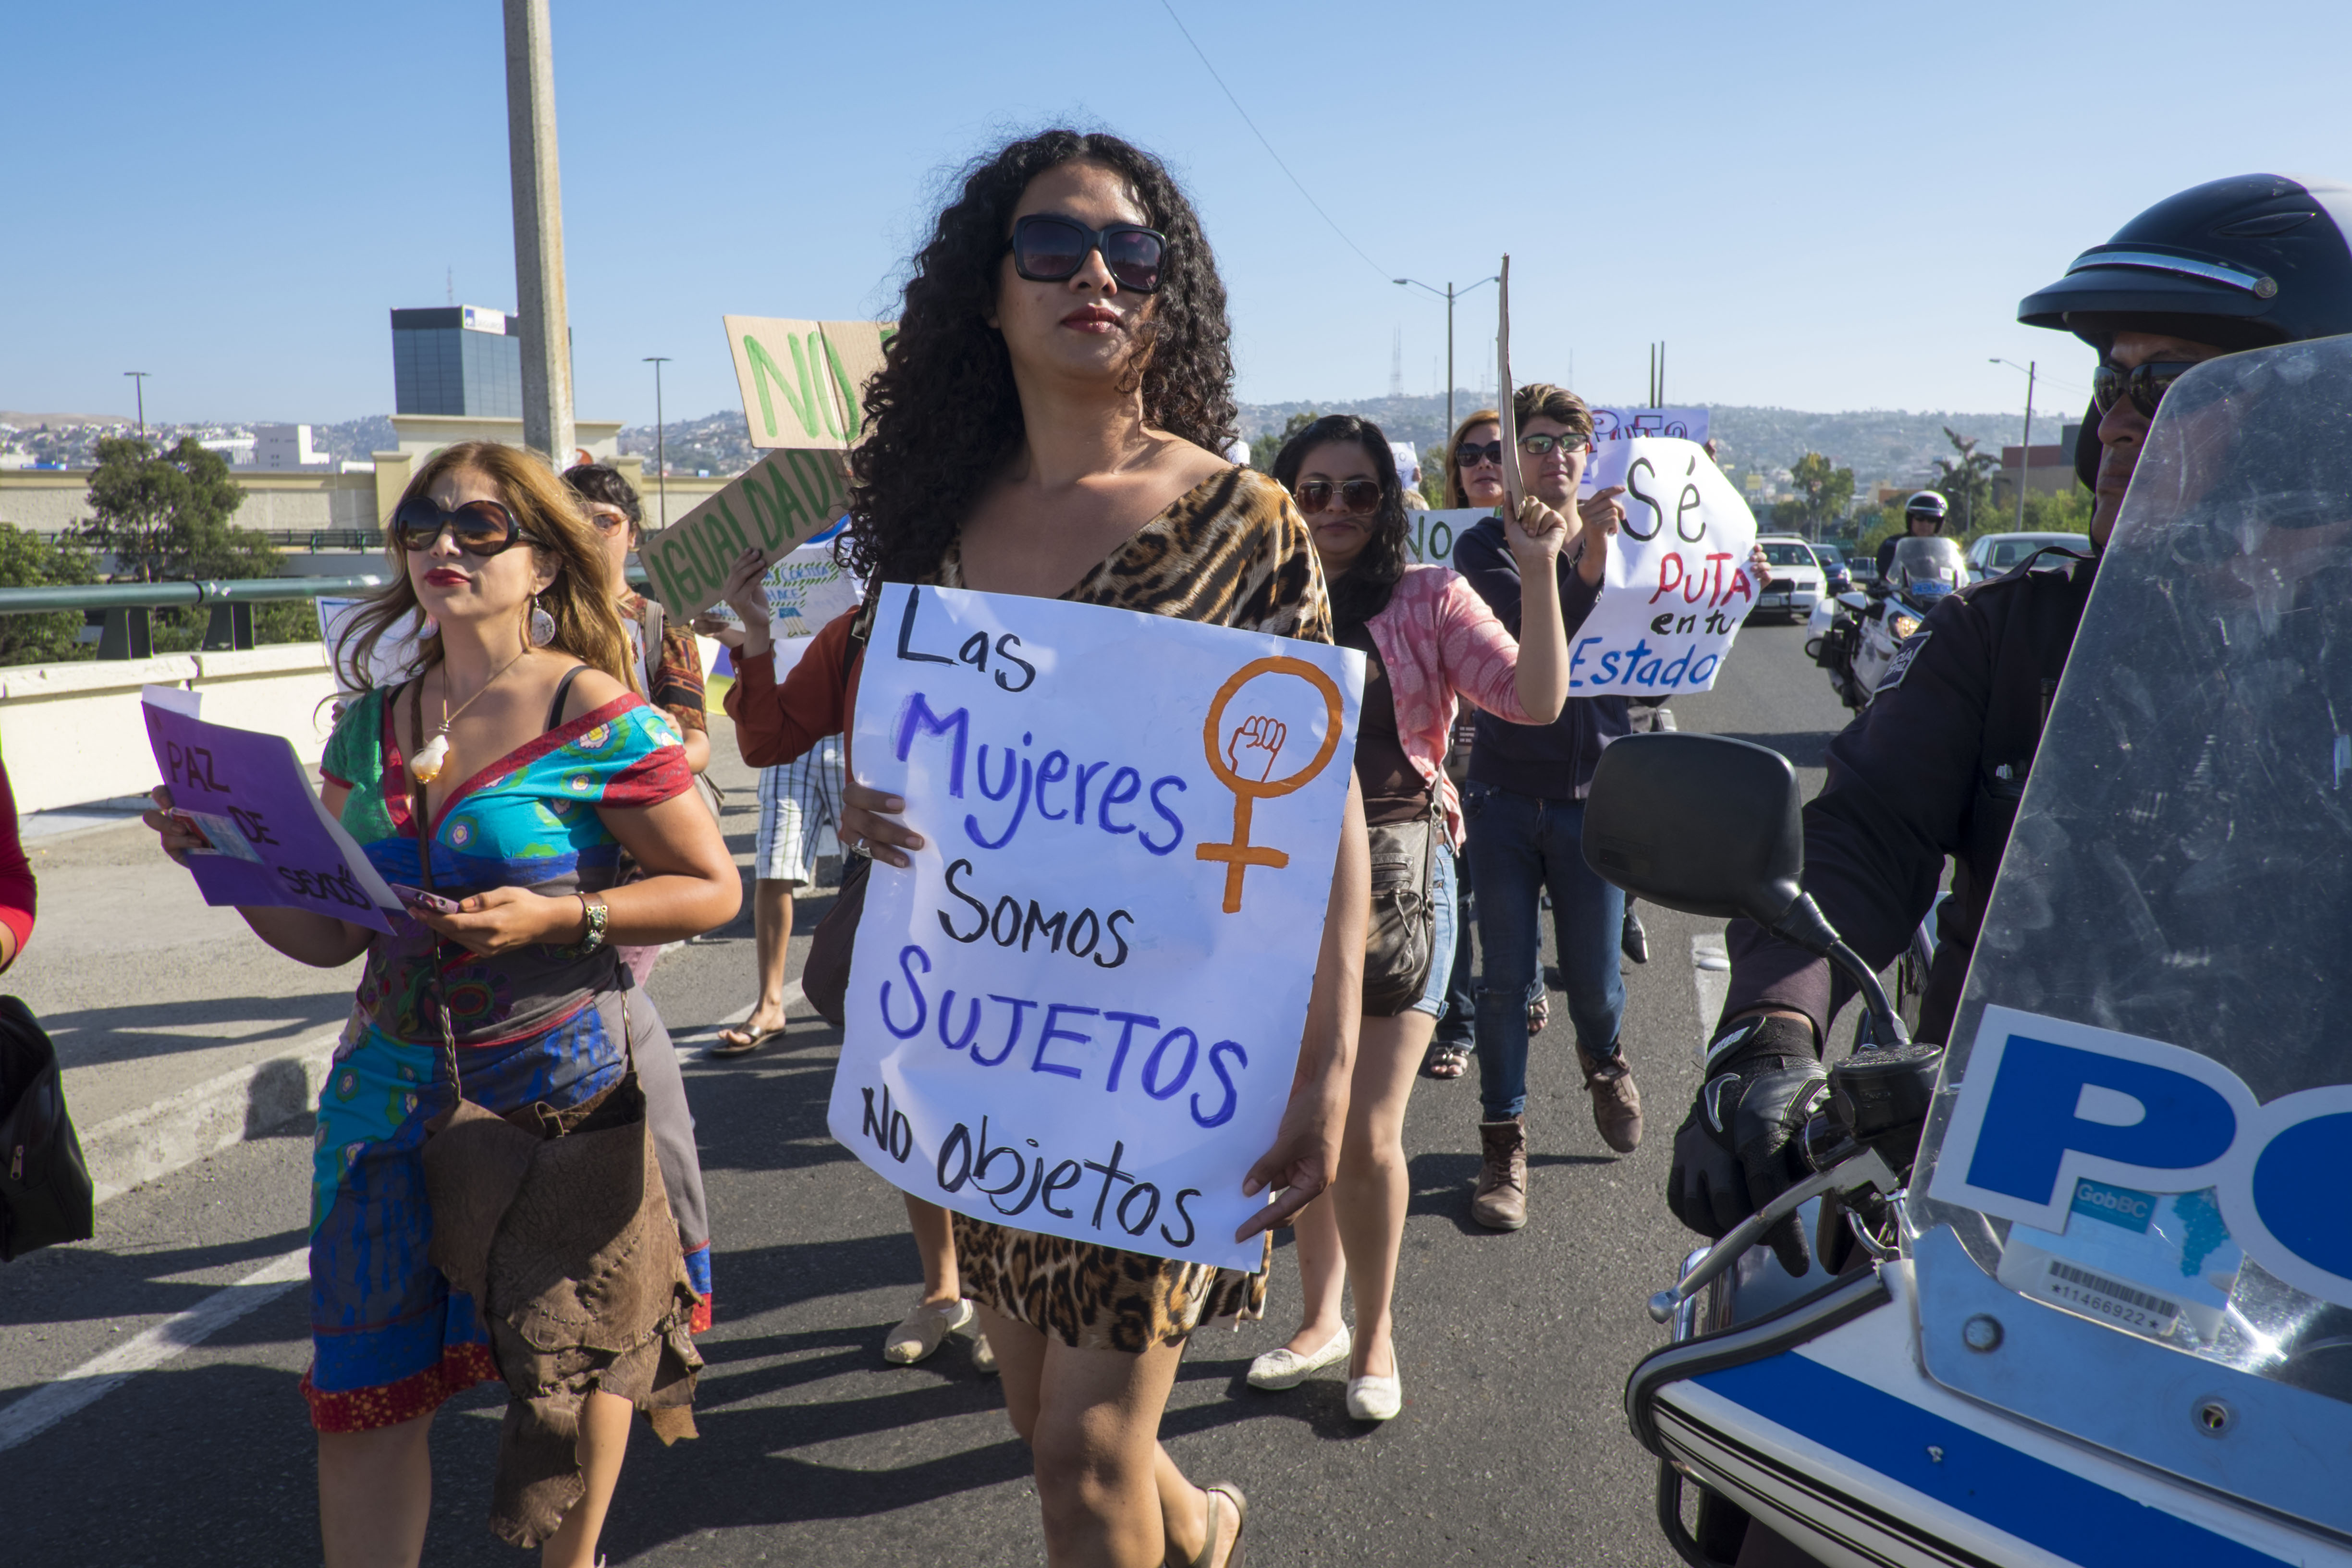 High Risk of HIV for Transgender Women in Tijuana